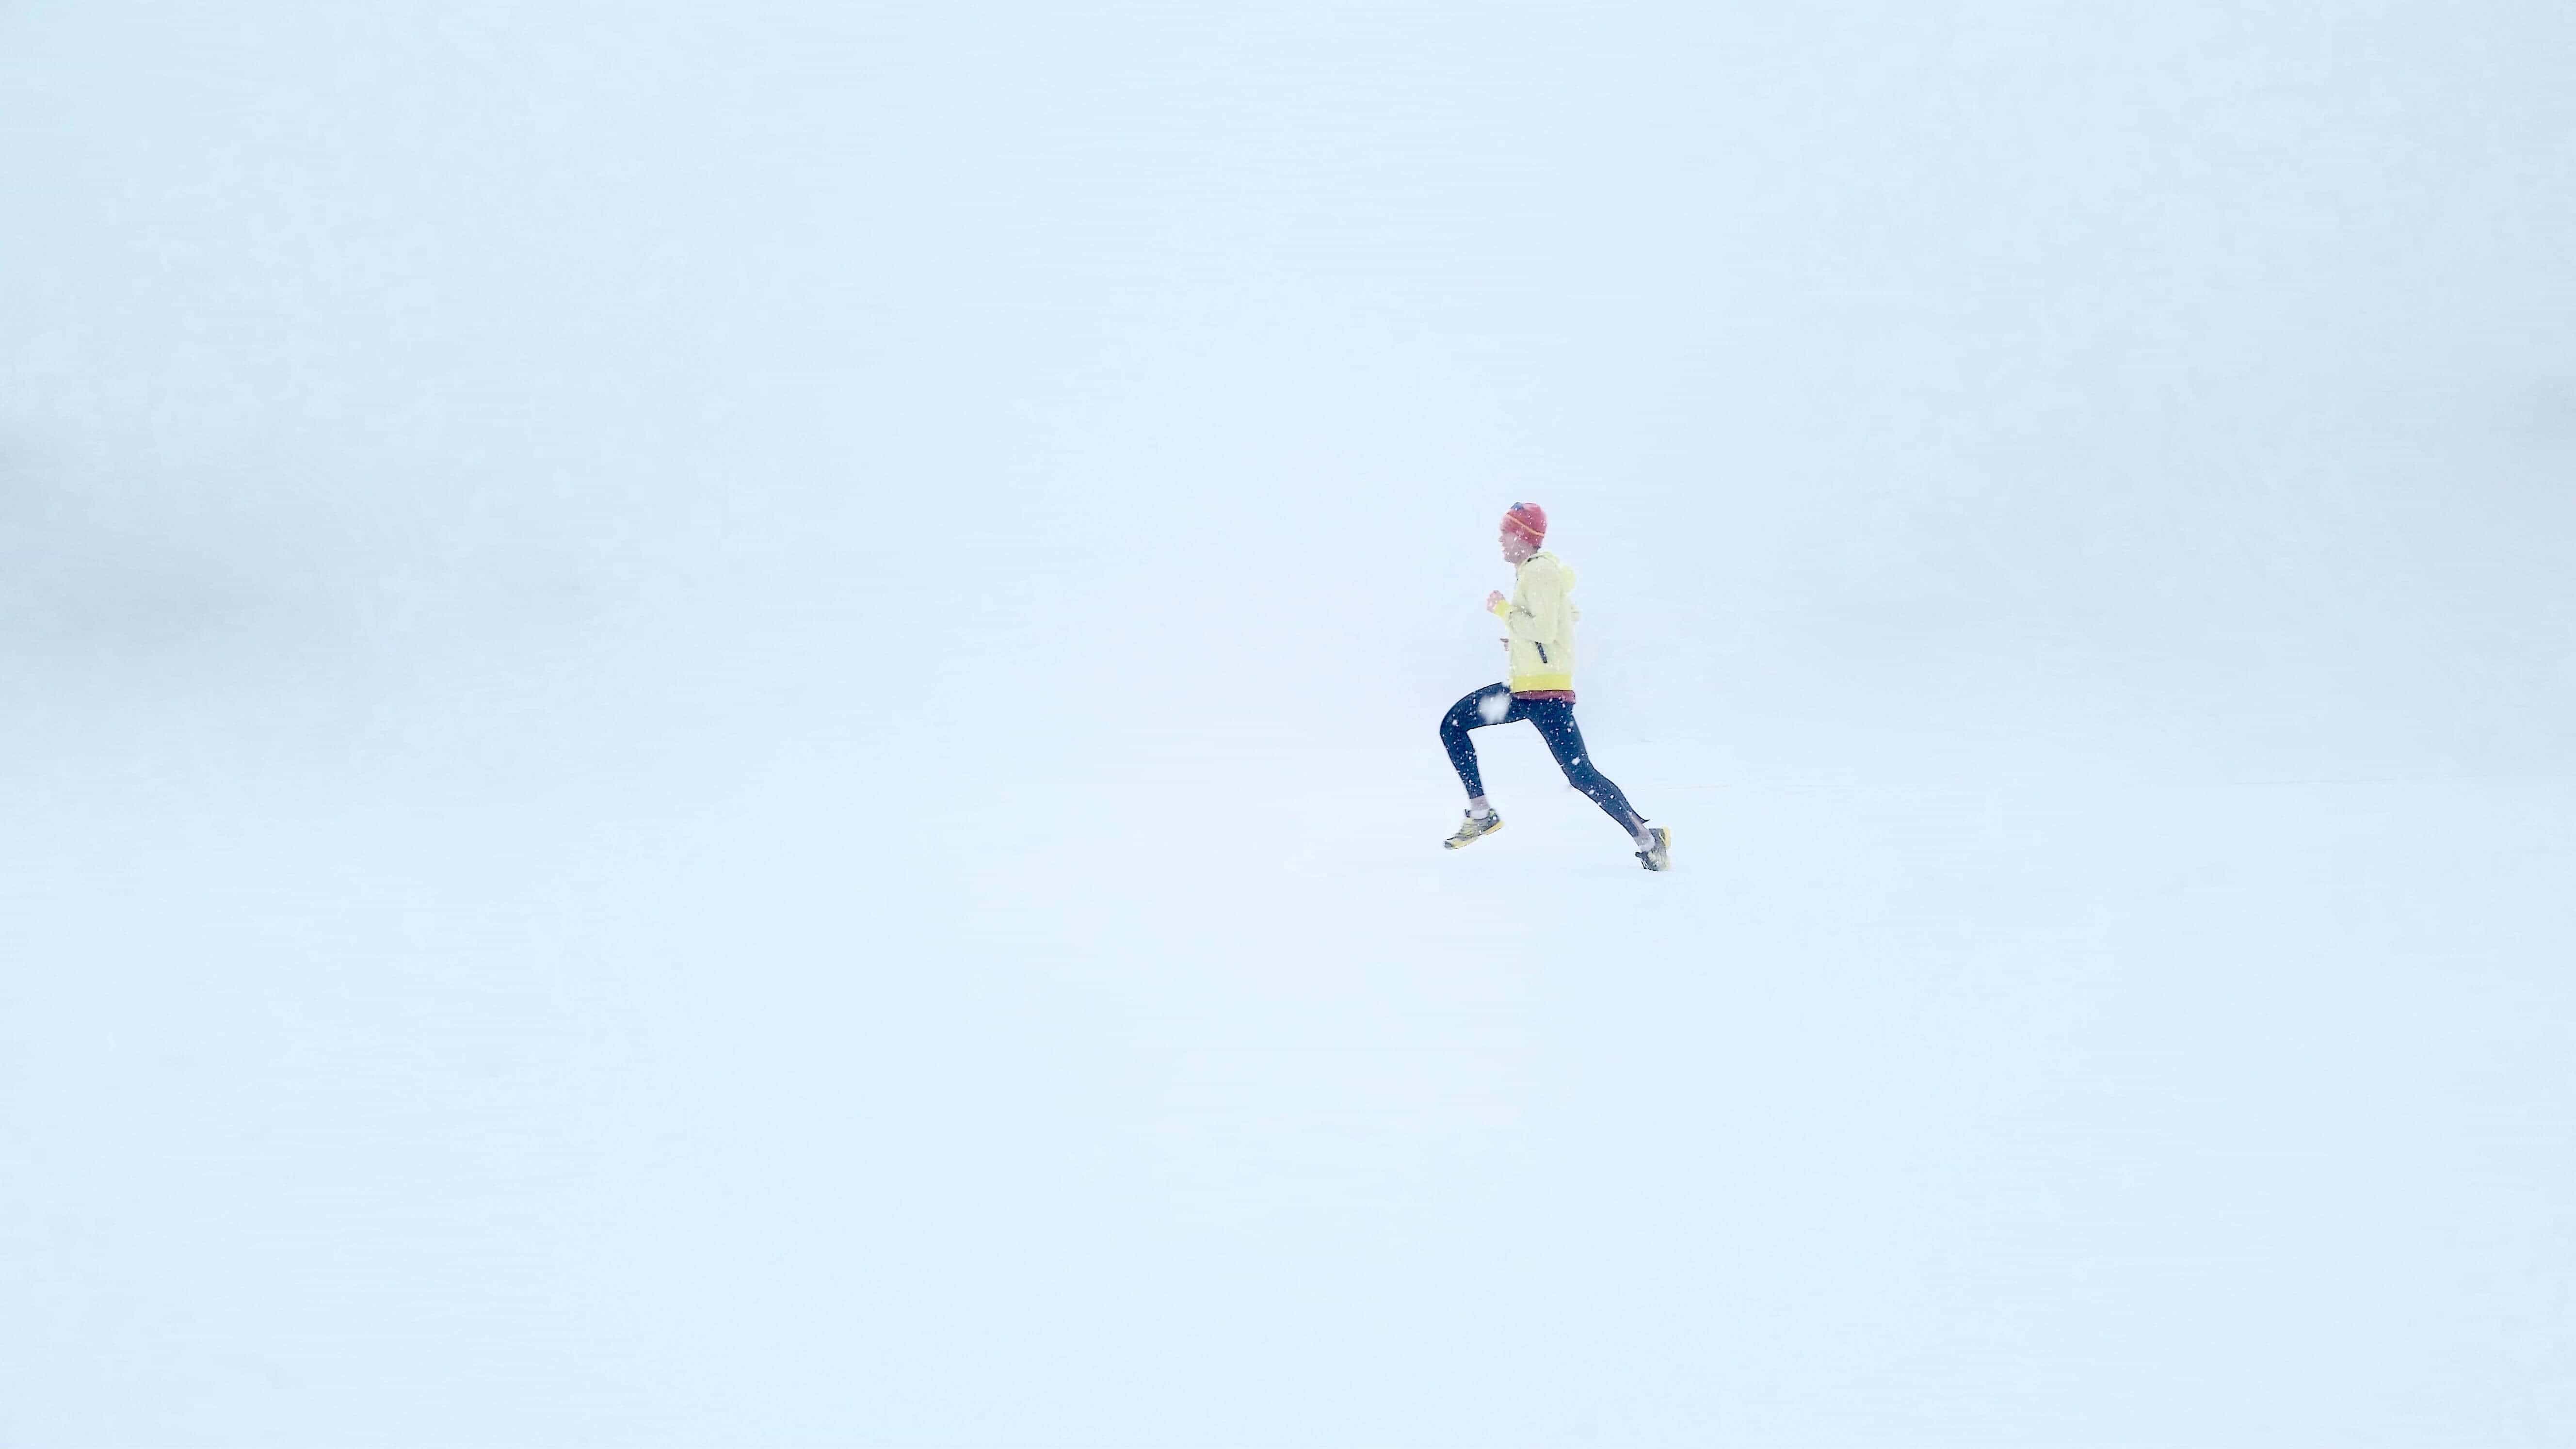 Jak trenować bieganie zimą?